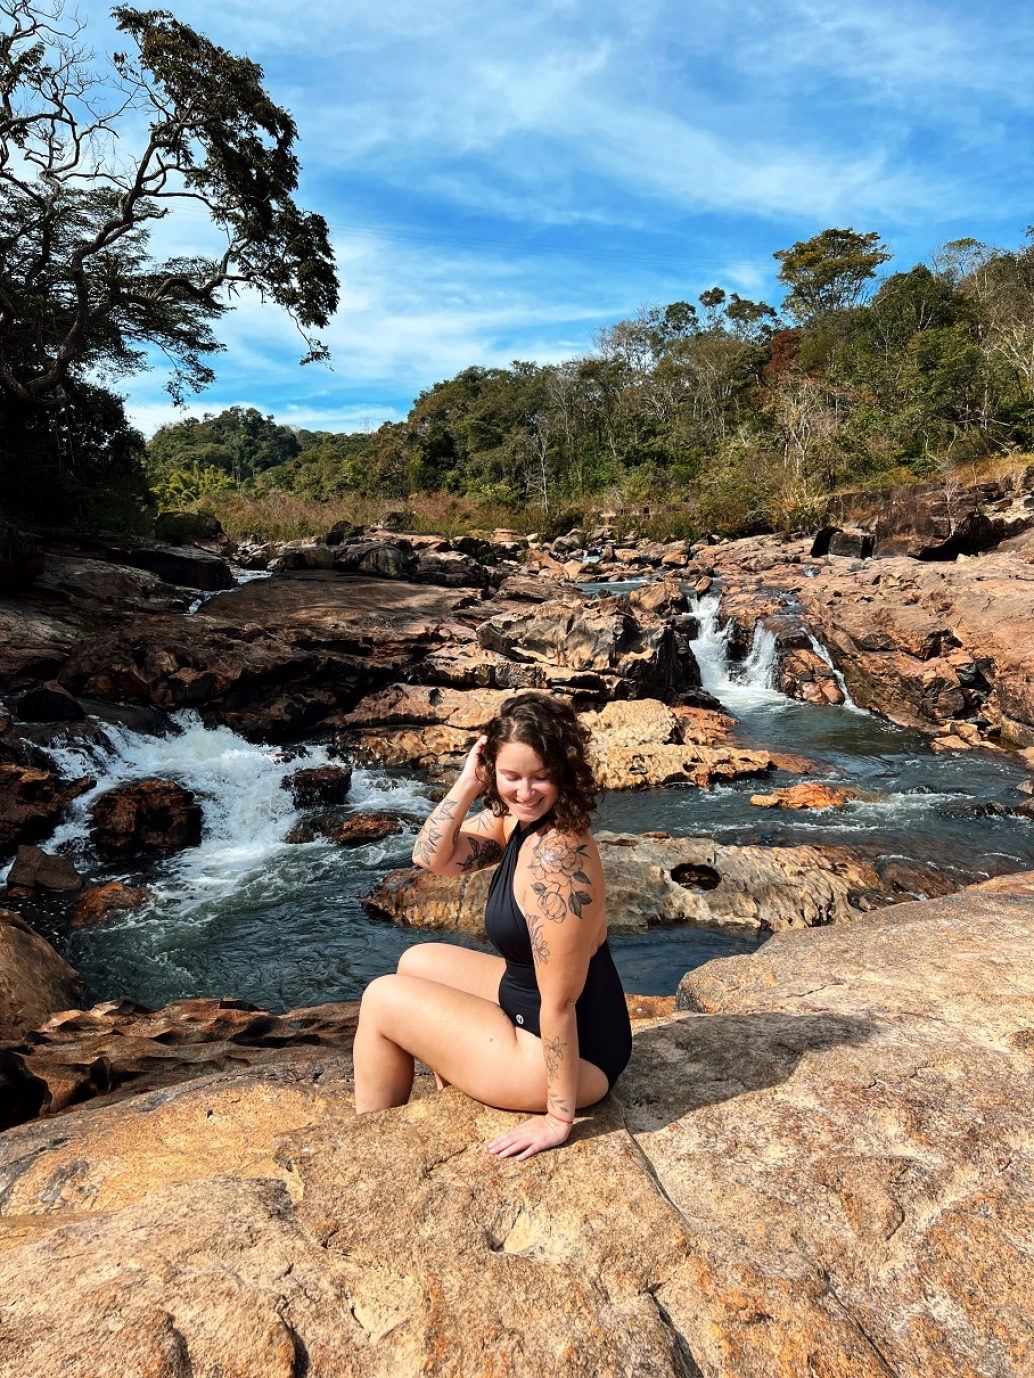 Mulher posando para foto sentada em uma pedra. Ao fundo, piscinas naturais formadas por pequenas quedas d’água